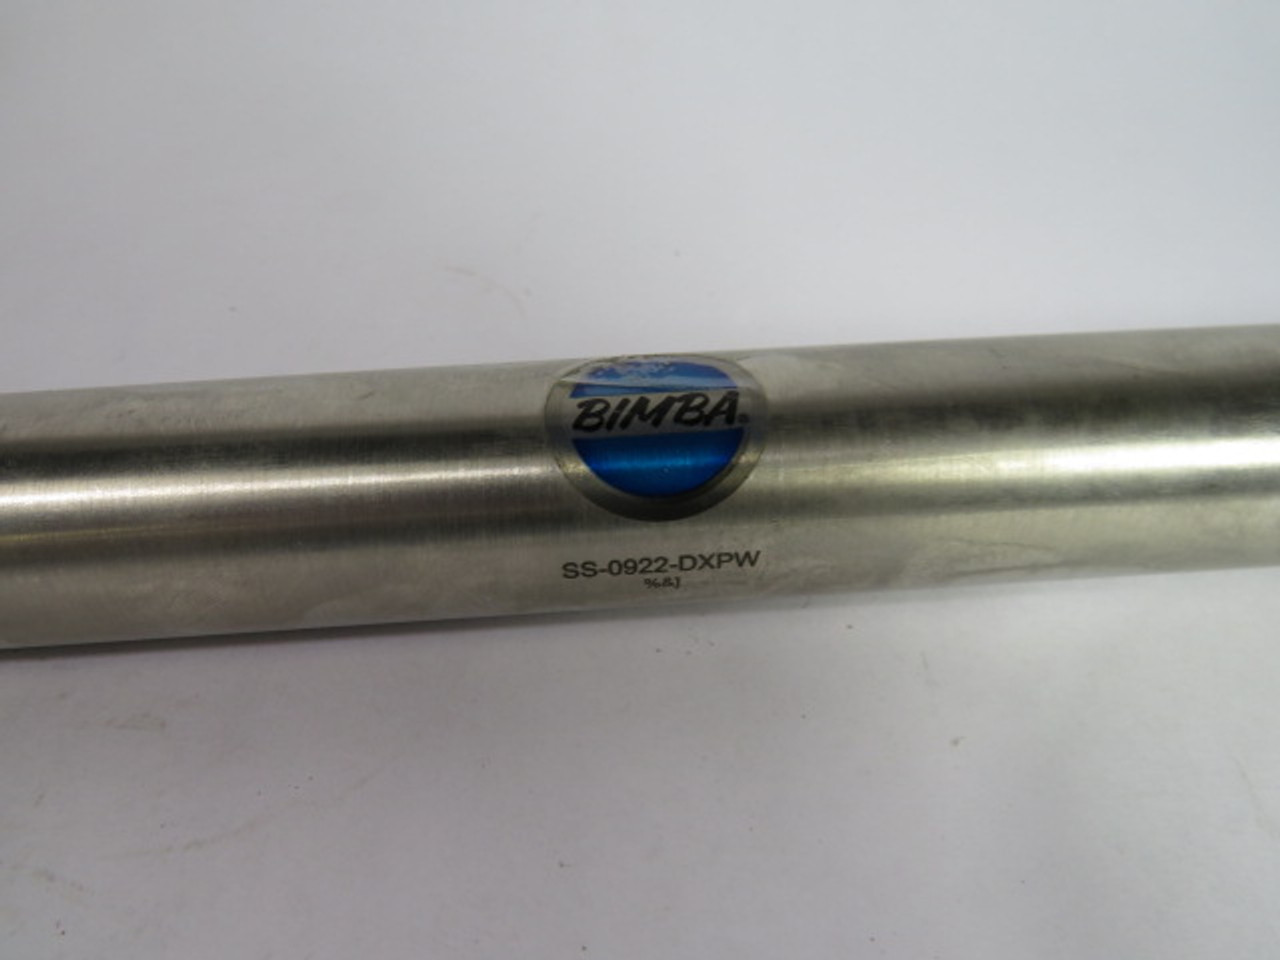 Bimba SS-0922-DXPW Pneumatic Cylinder USED